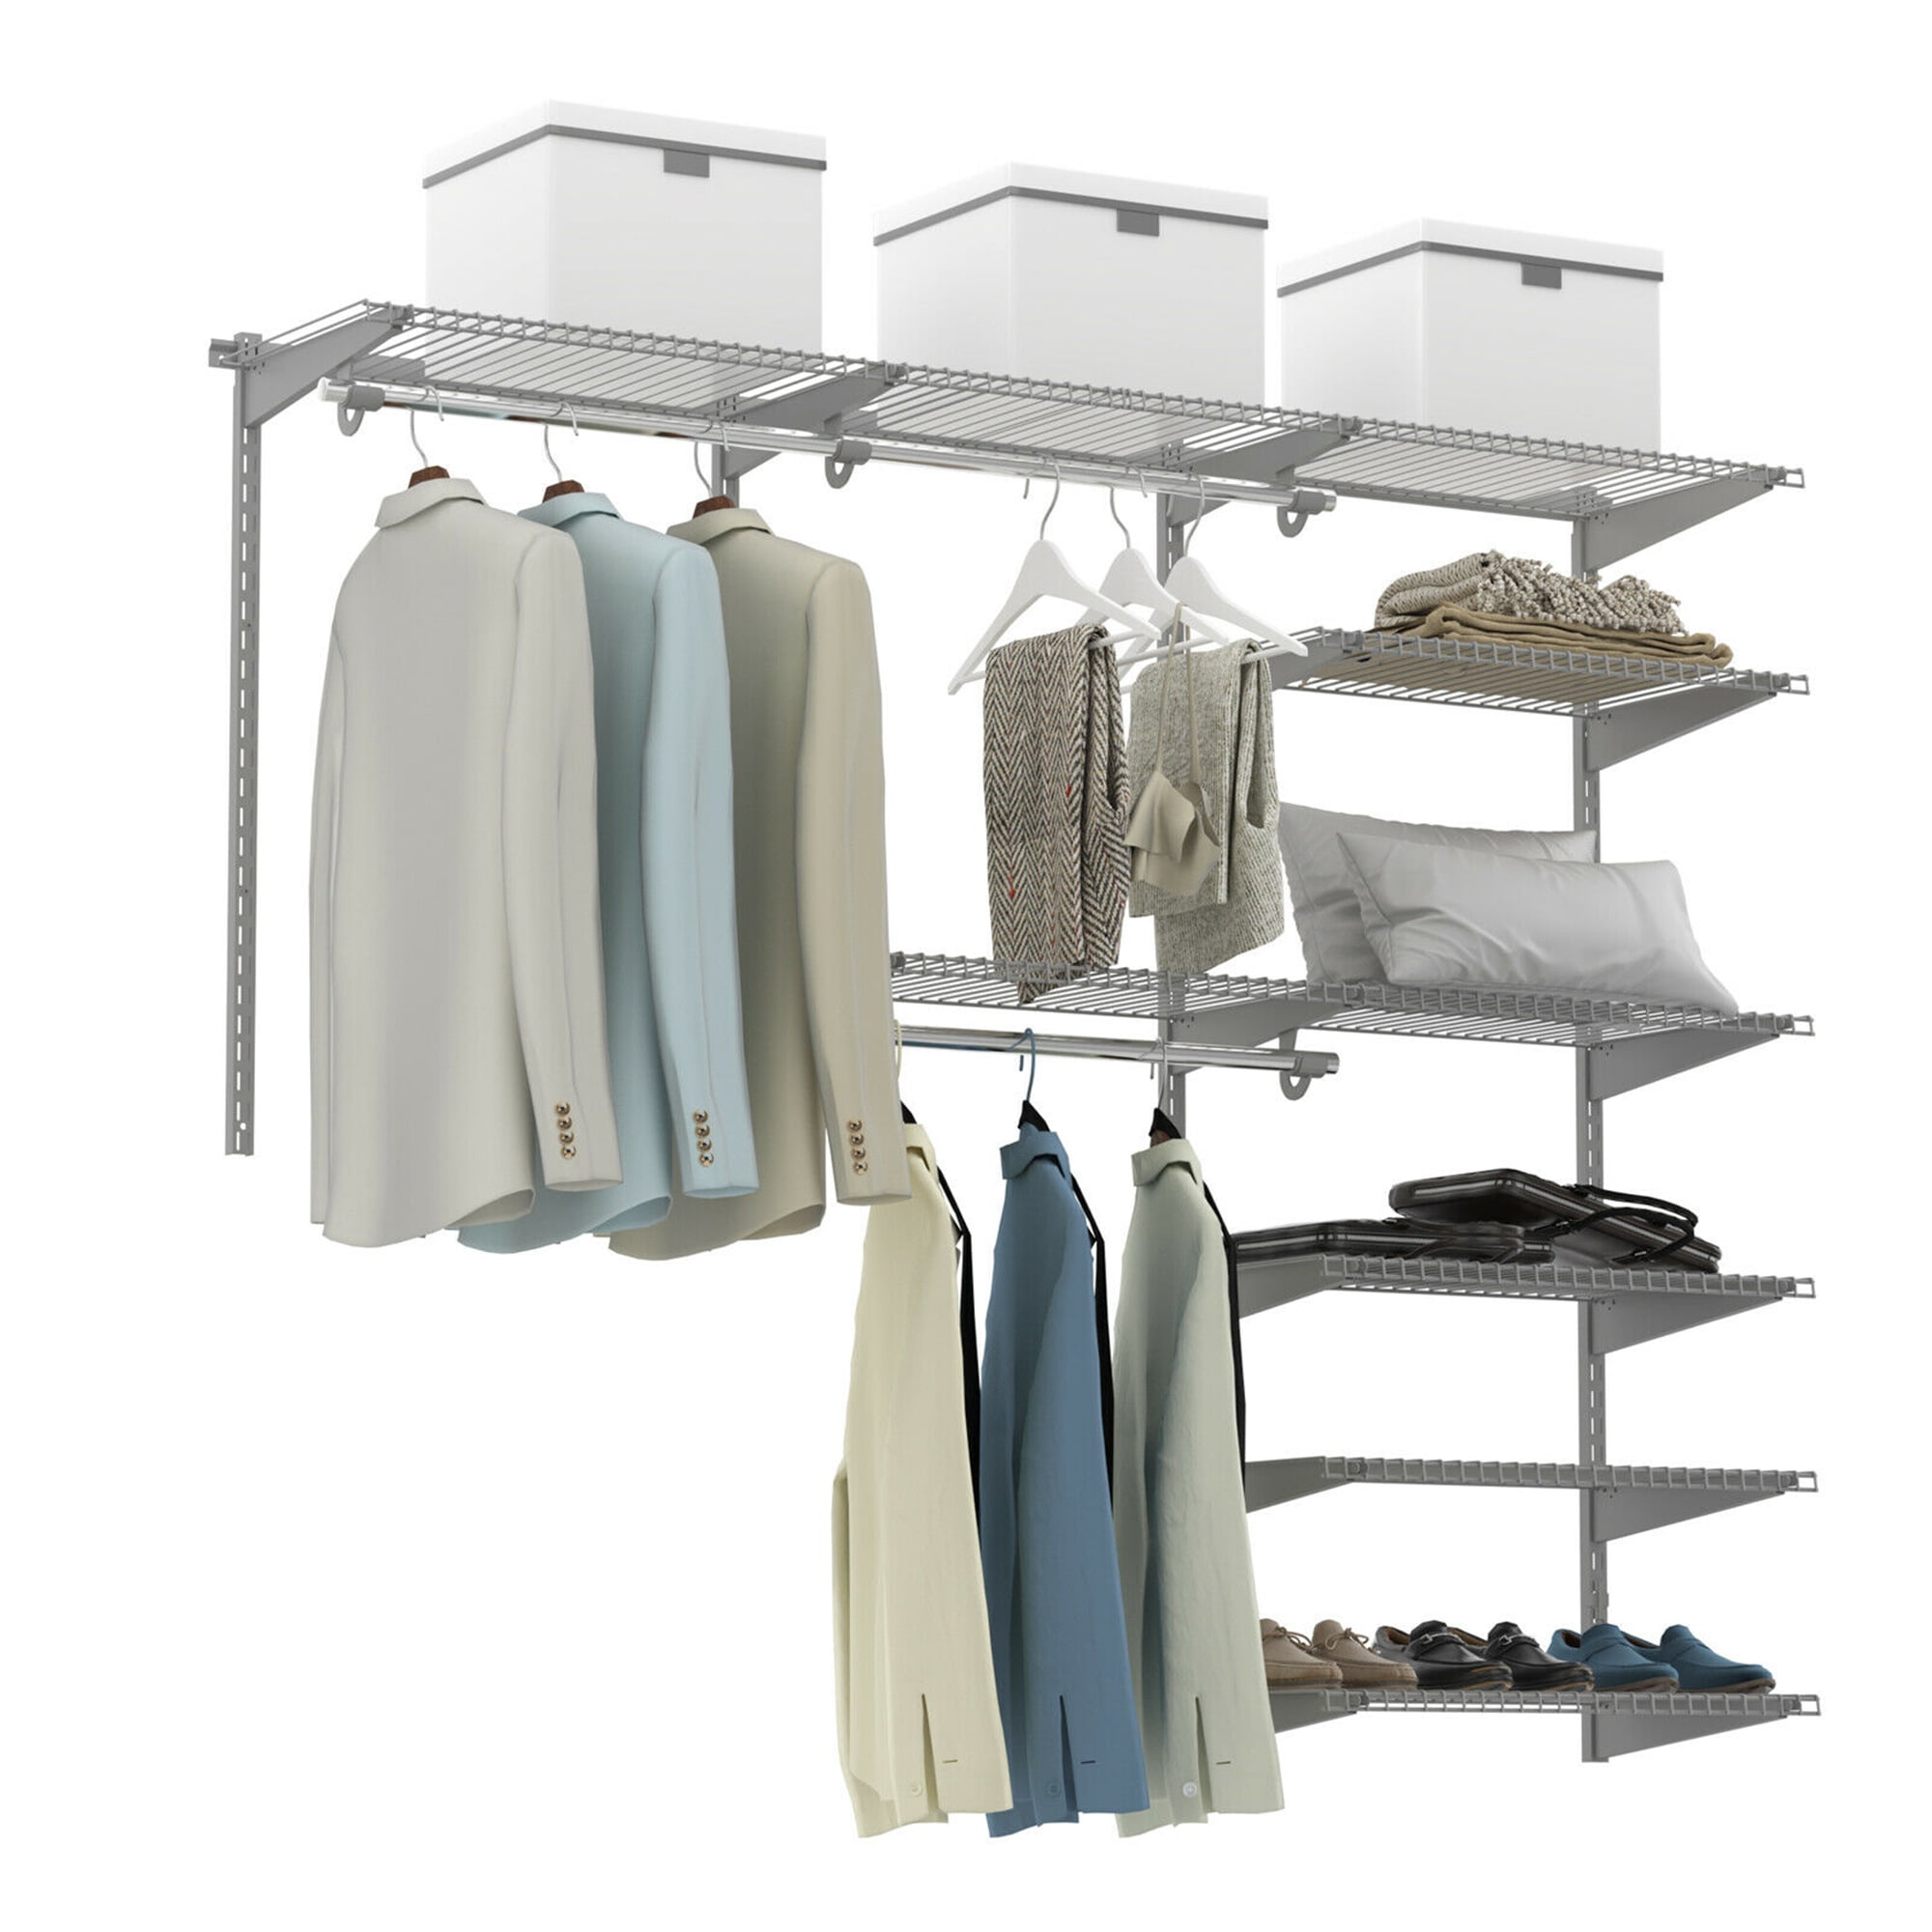 Organizador de ropa  Clever closet, Storage closet organization, Closet  design